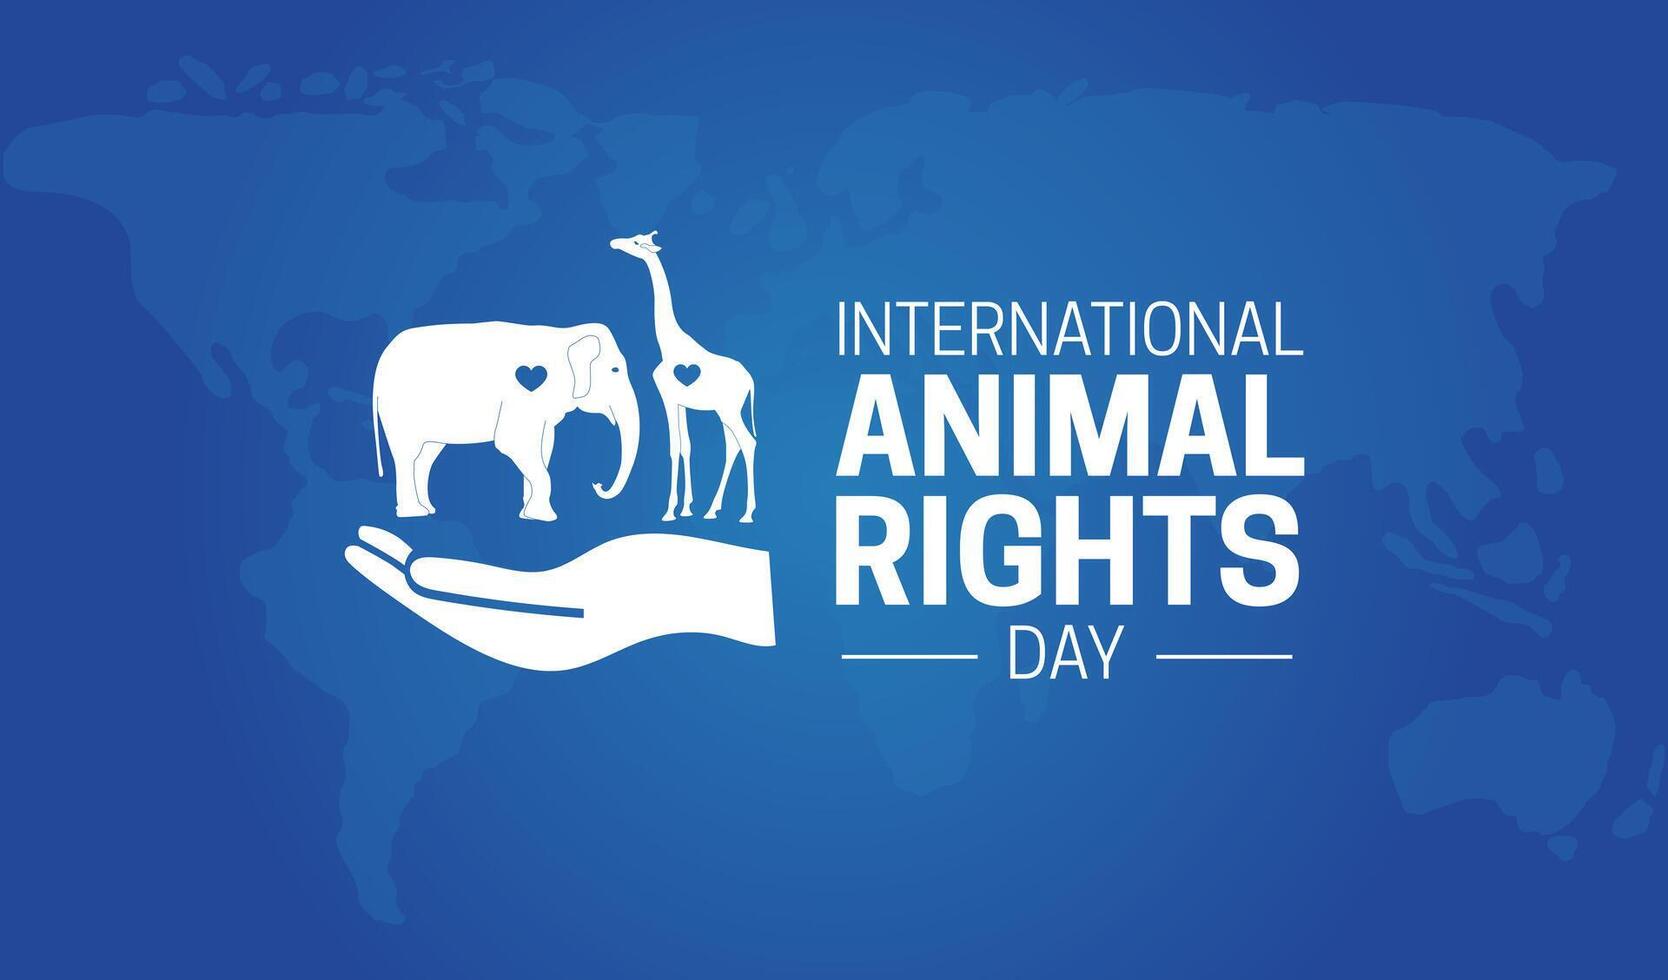 International Tier Rechte Tag Hintergrund Banner vektor